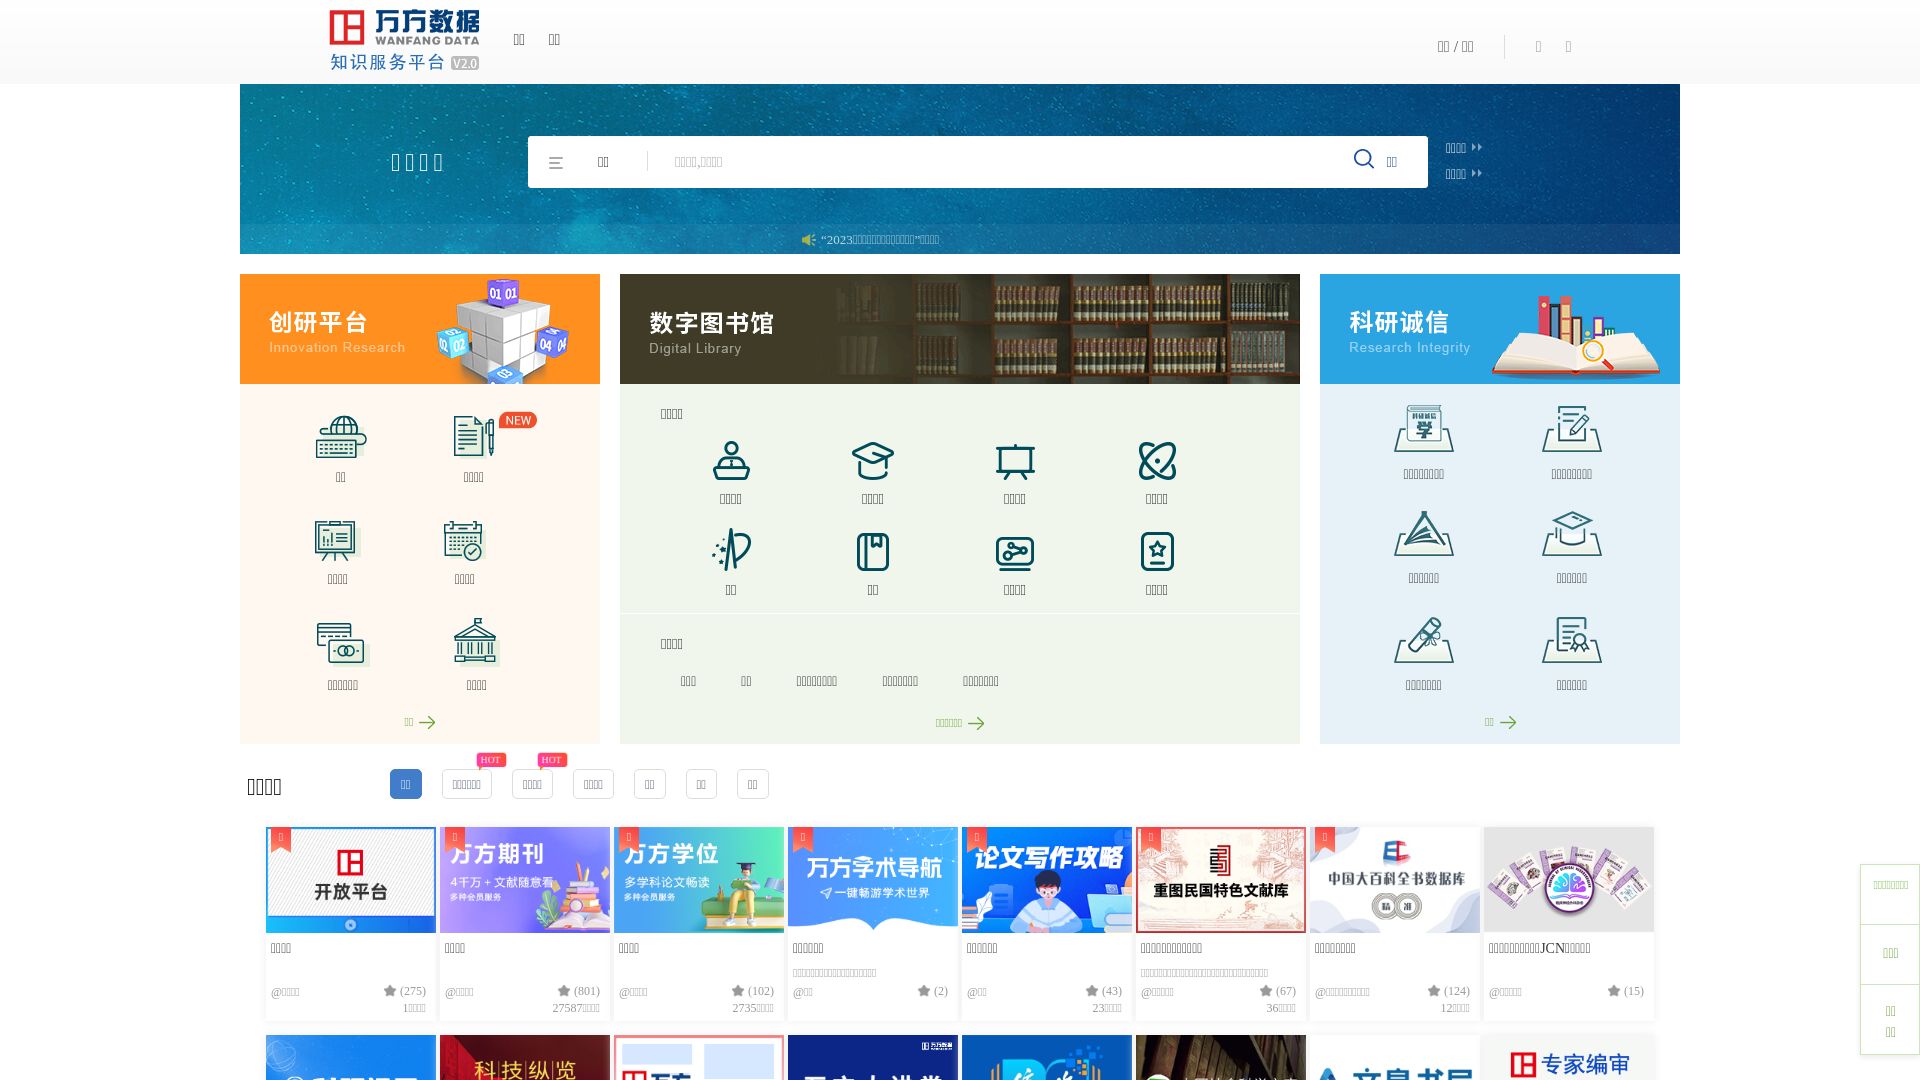 网站状态 wanfangdata.com.cn 是  在线的